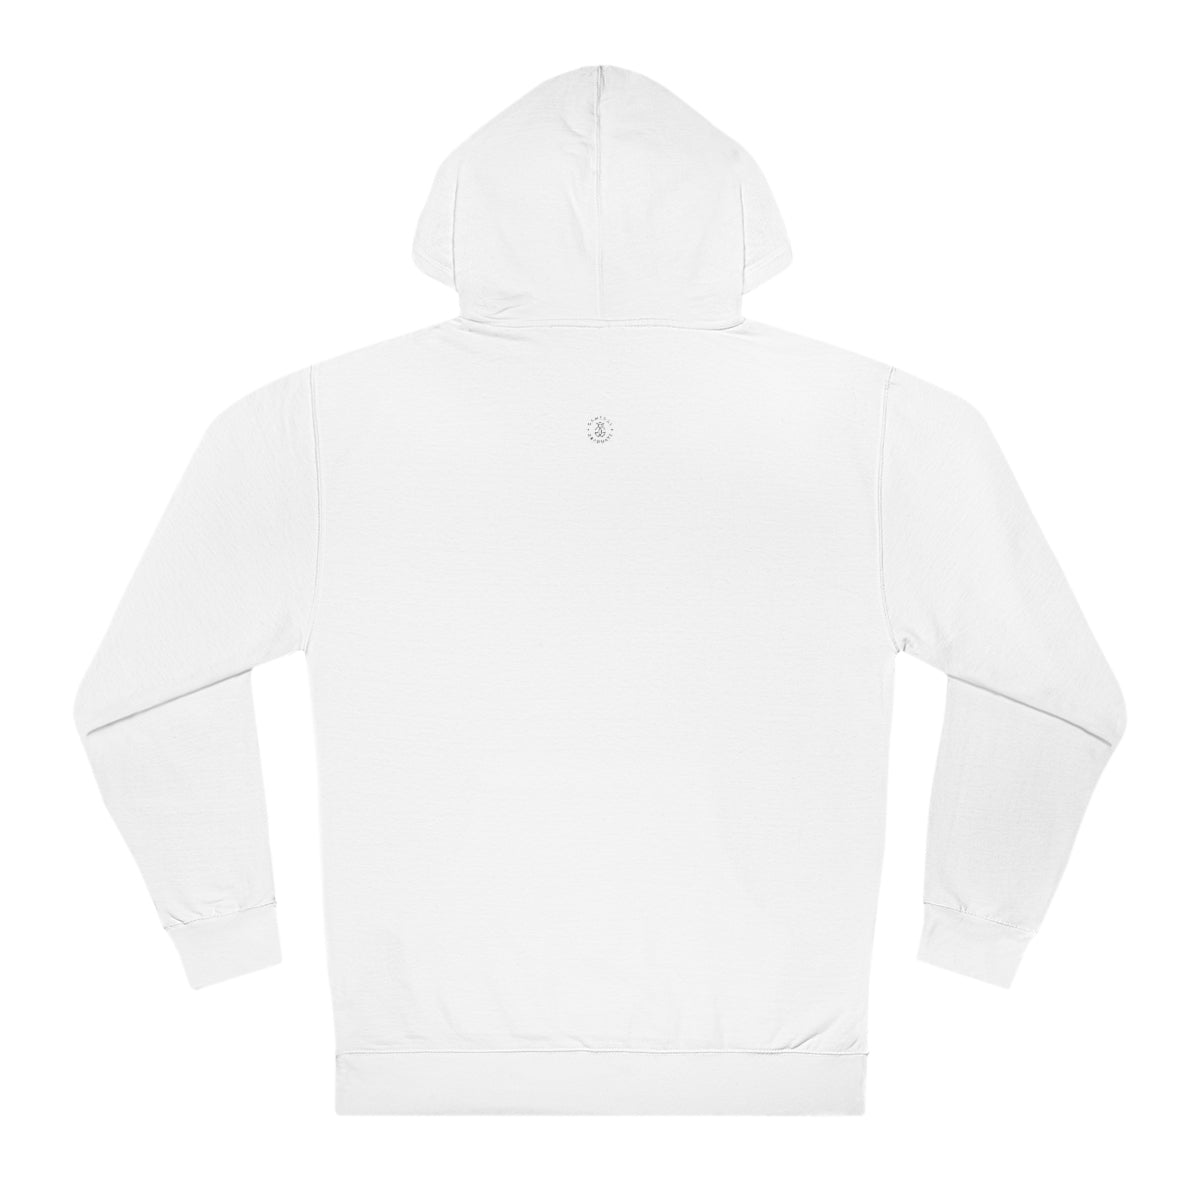 USC Hooded Sweatshirt - GG - ITC